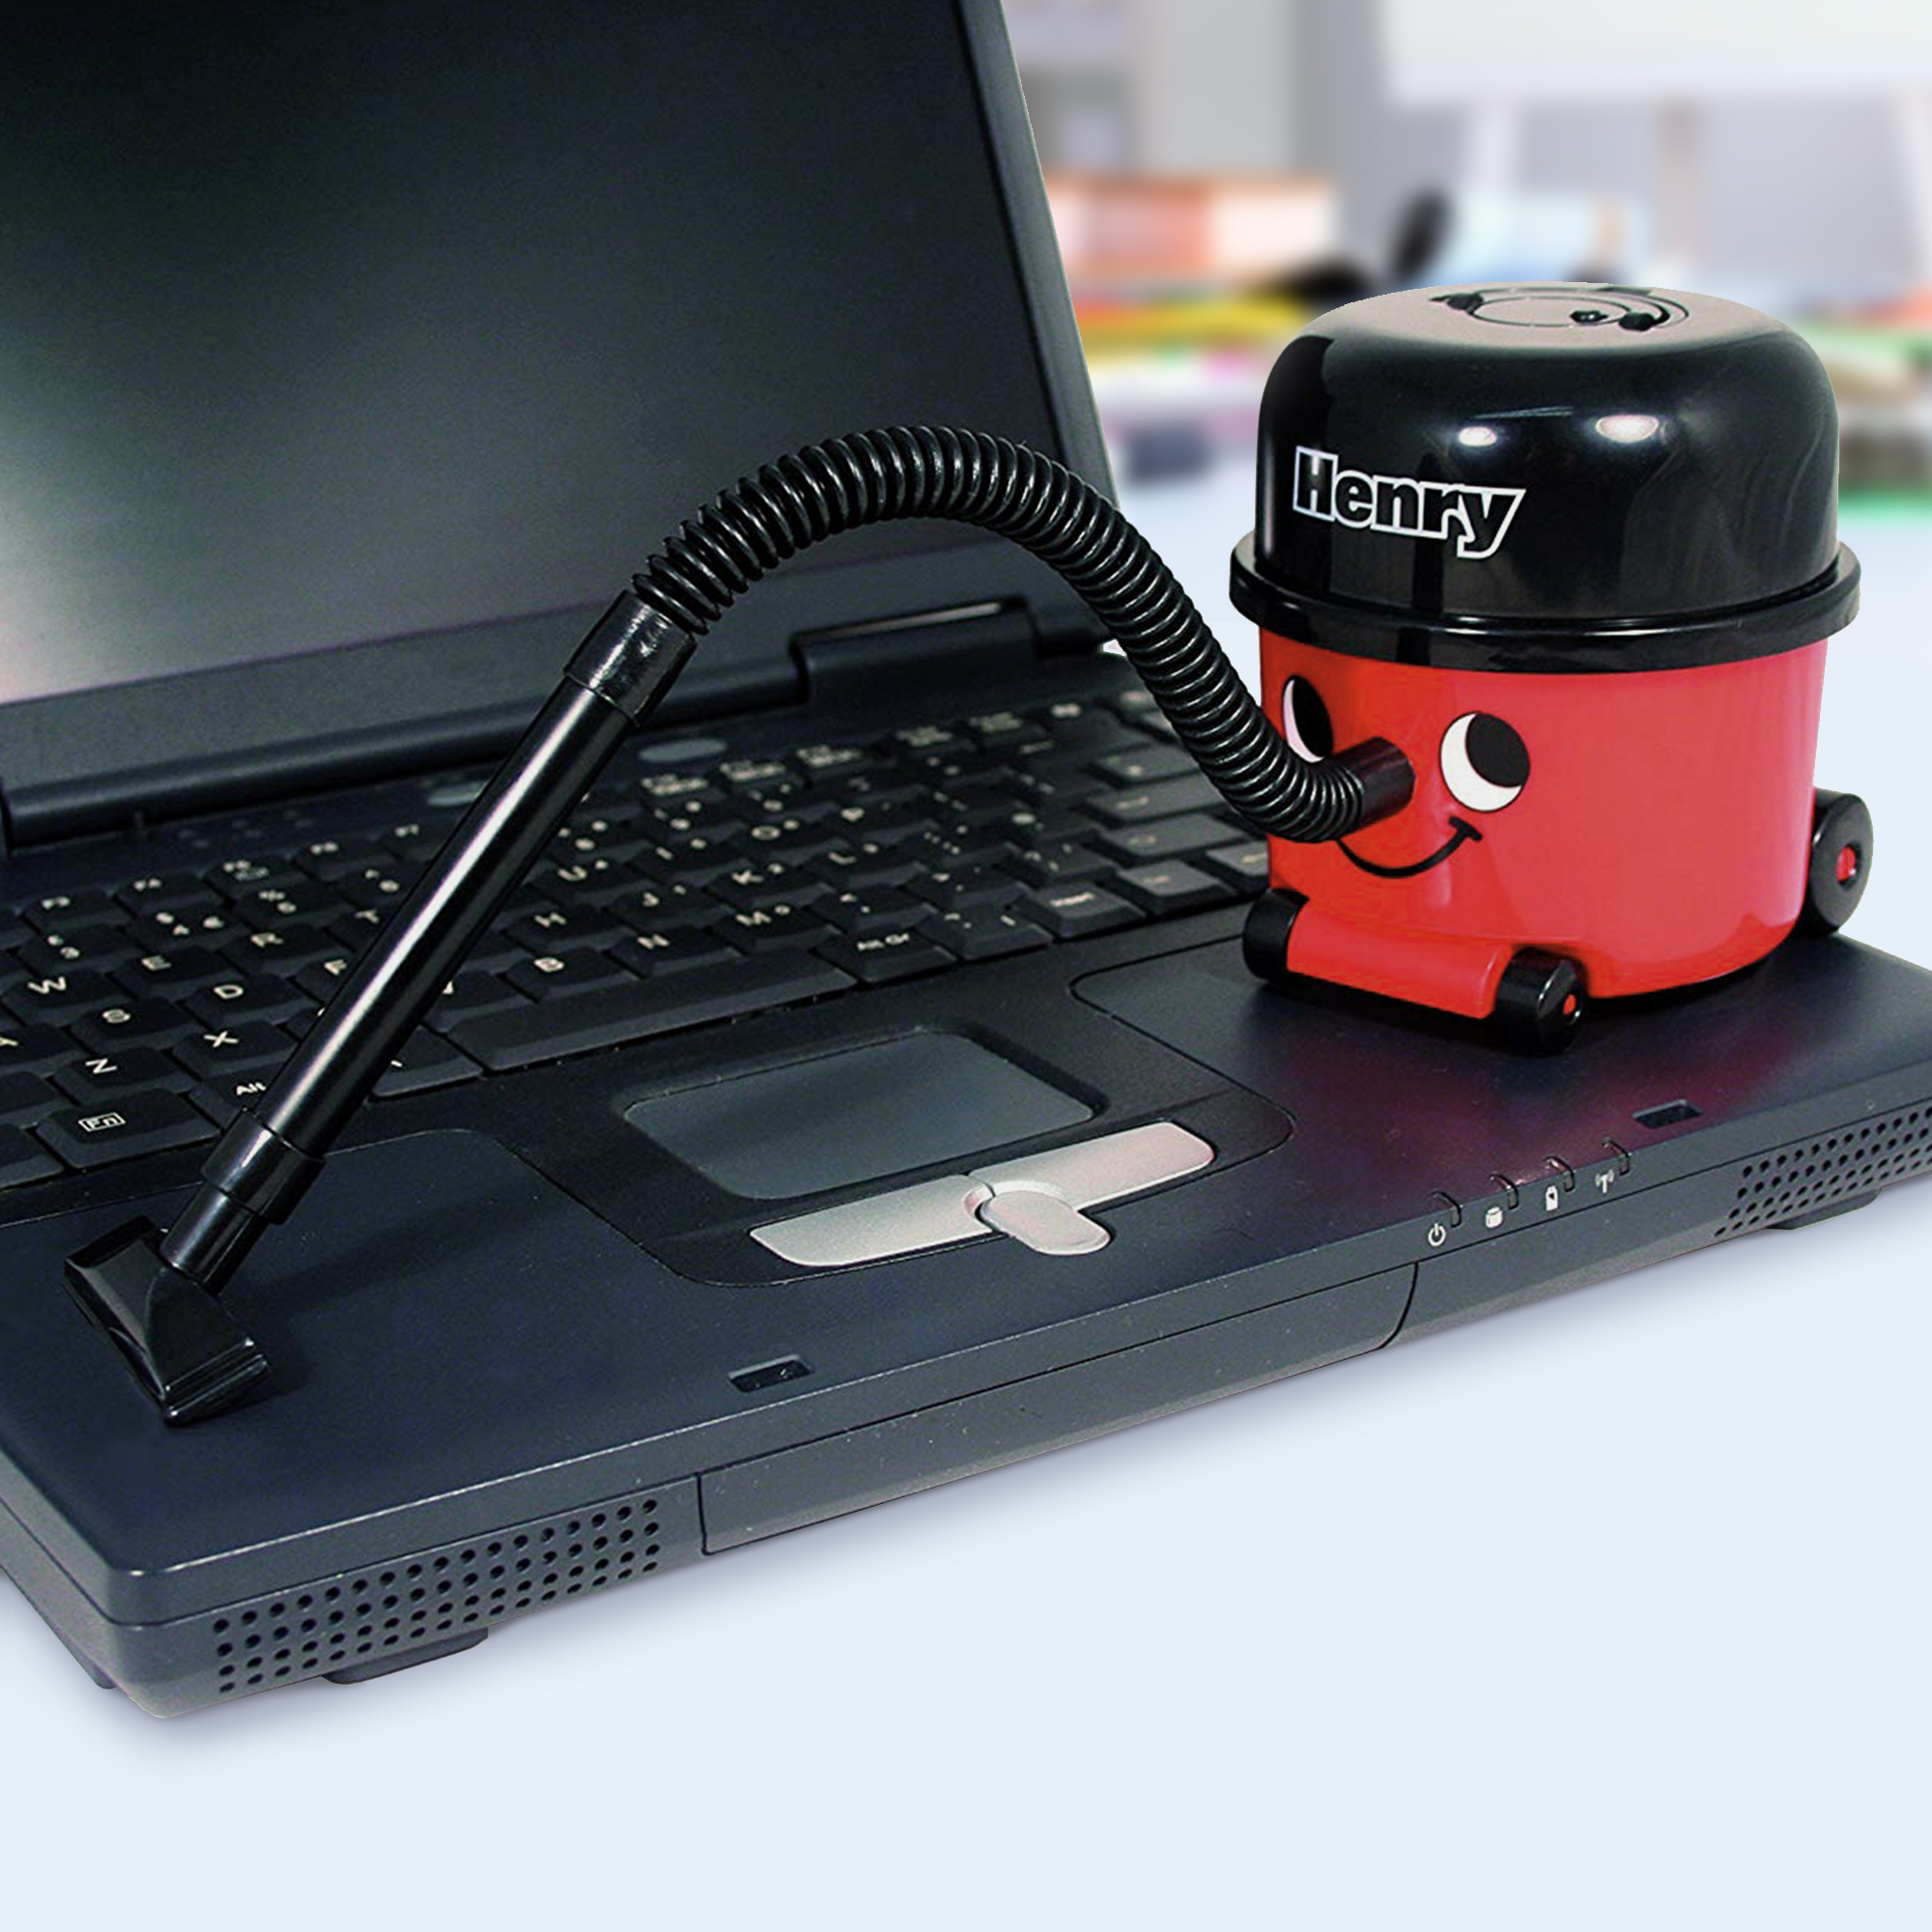 Mini Staubsauger für Schreibtisch und Tastatur - Henry PC-Sauger